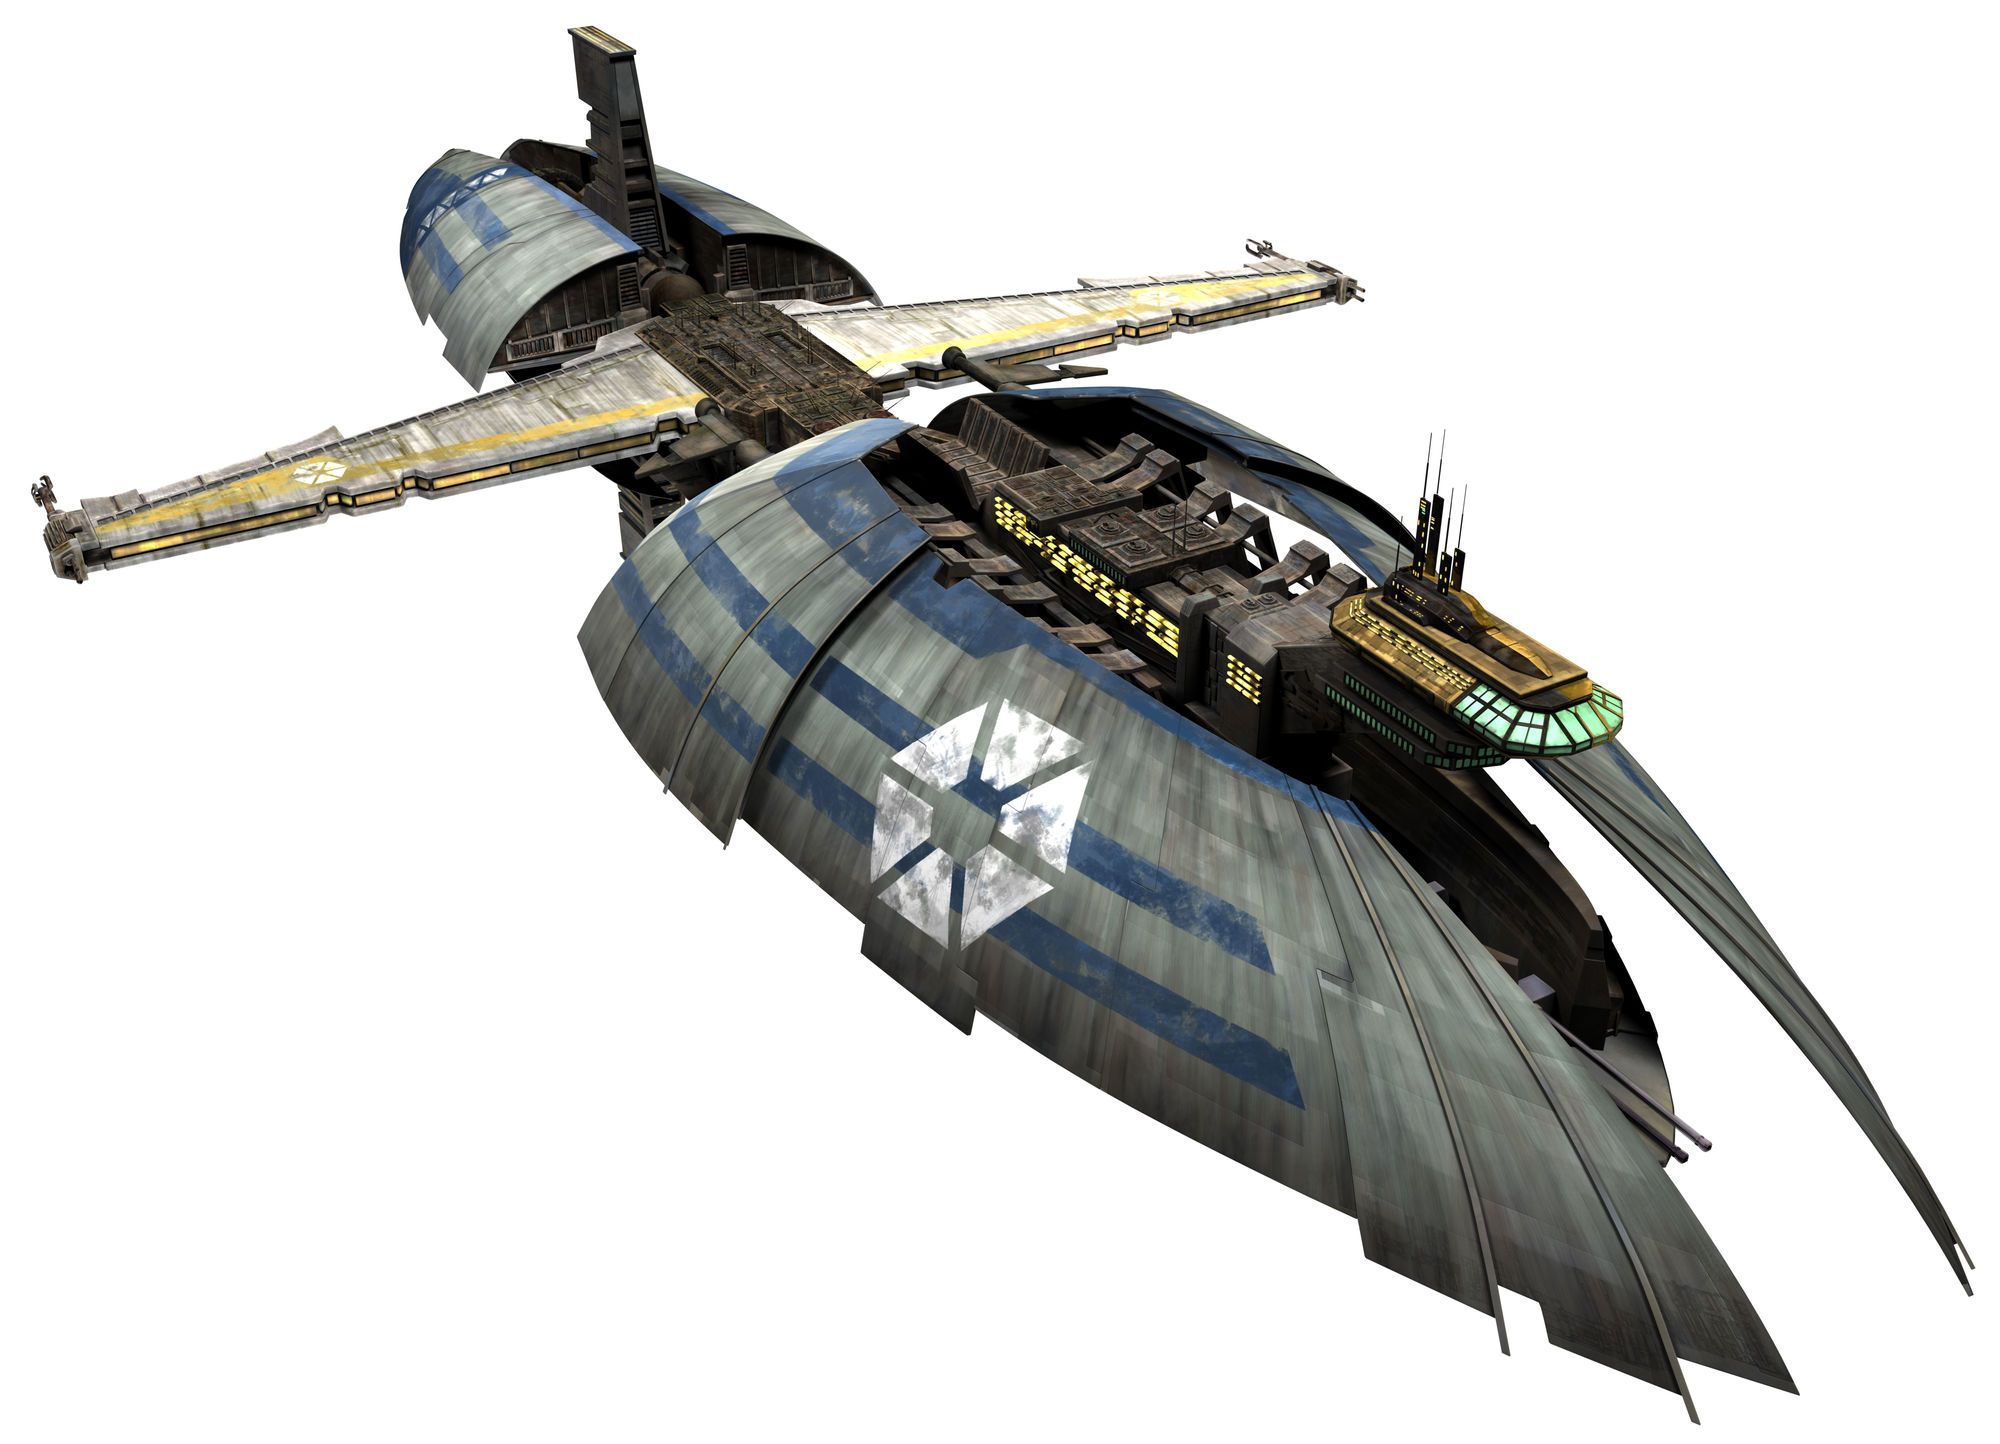 Munificent Class Star Frigate. Star Wars Vehicles, Star Wars Ships, Star Wars Spaceships